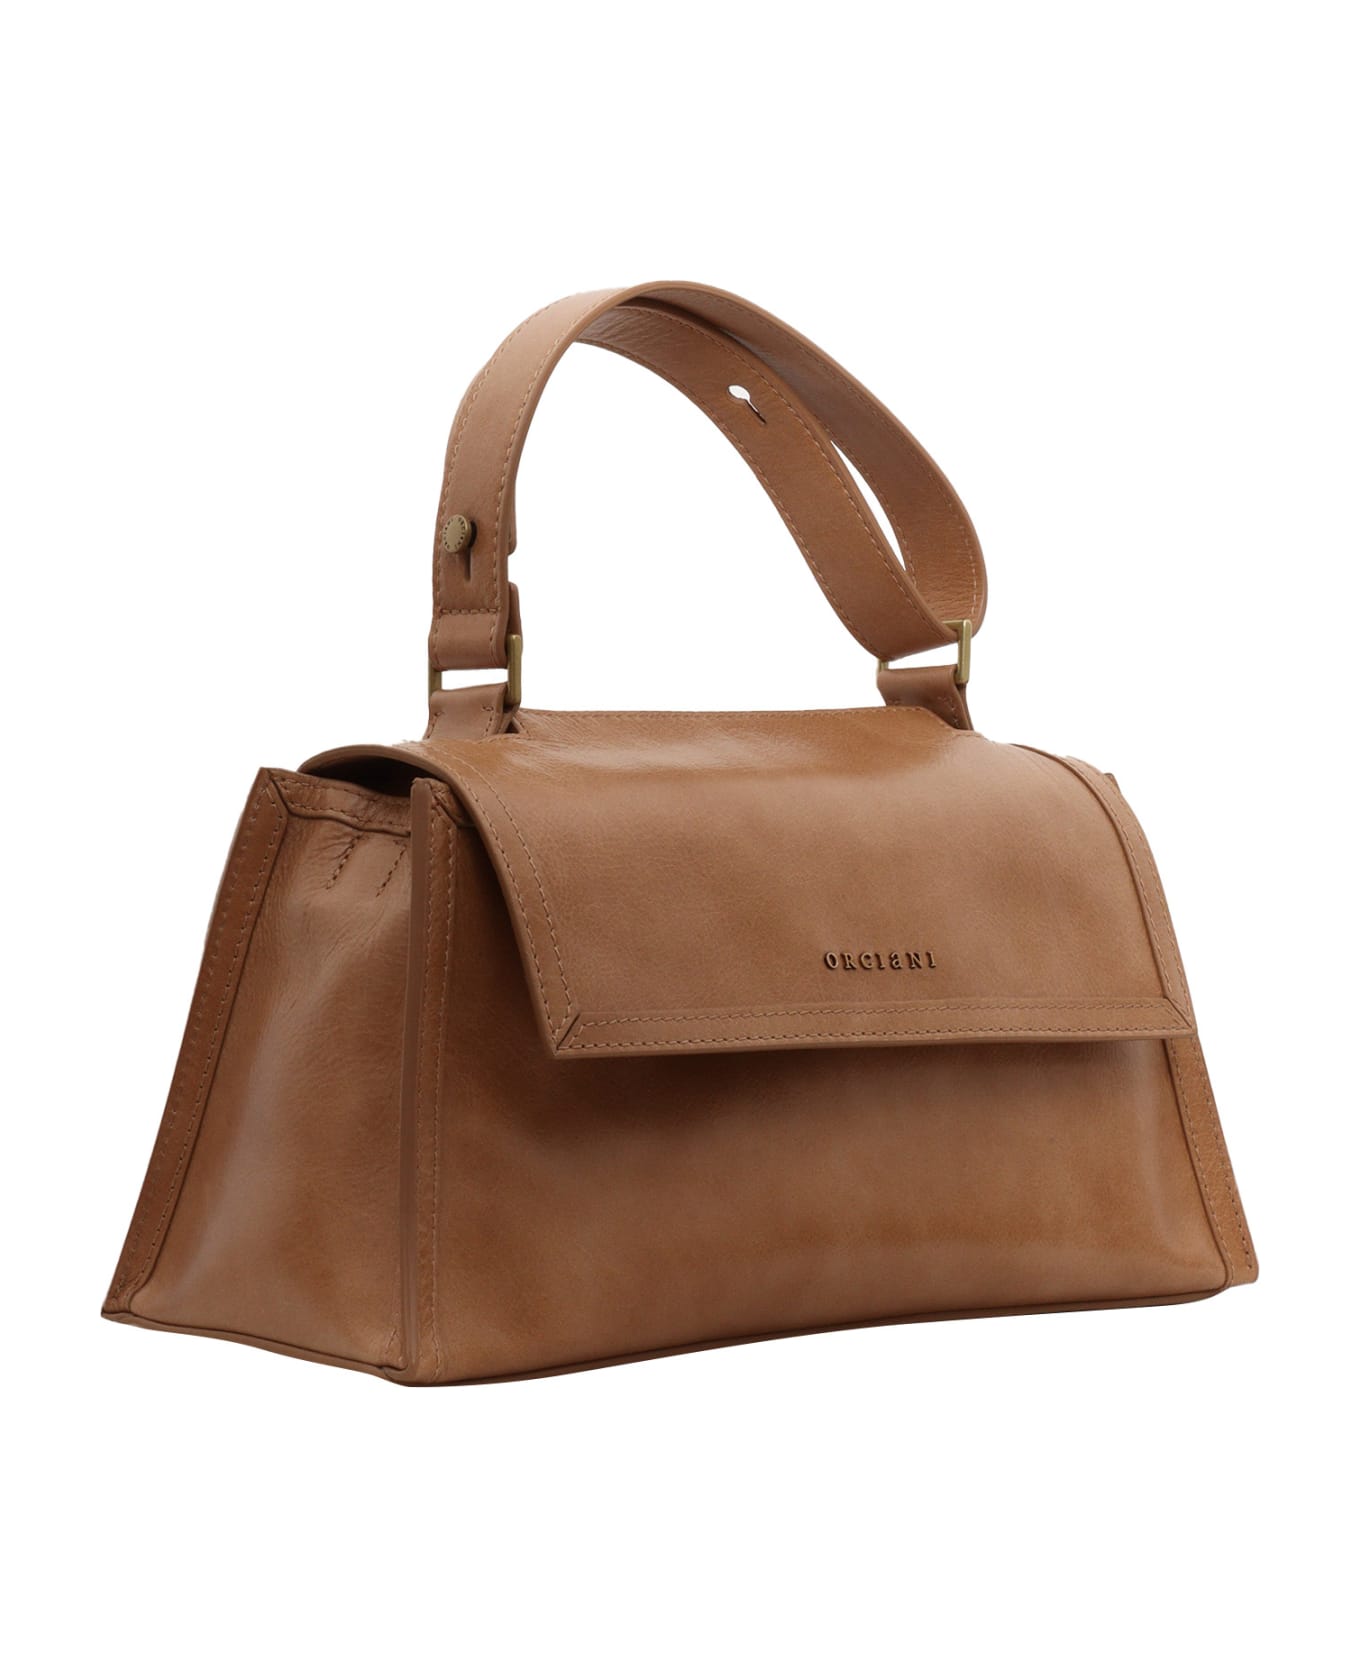 Orciani Brown Handbag - BROWN